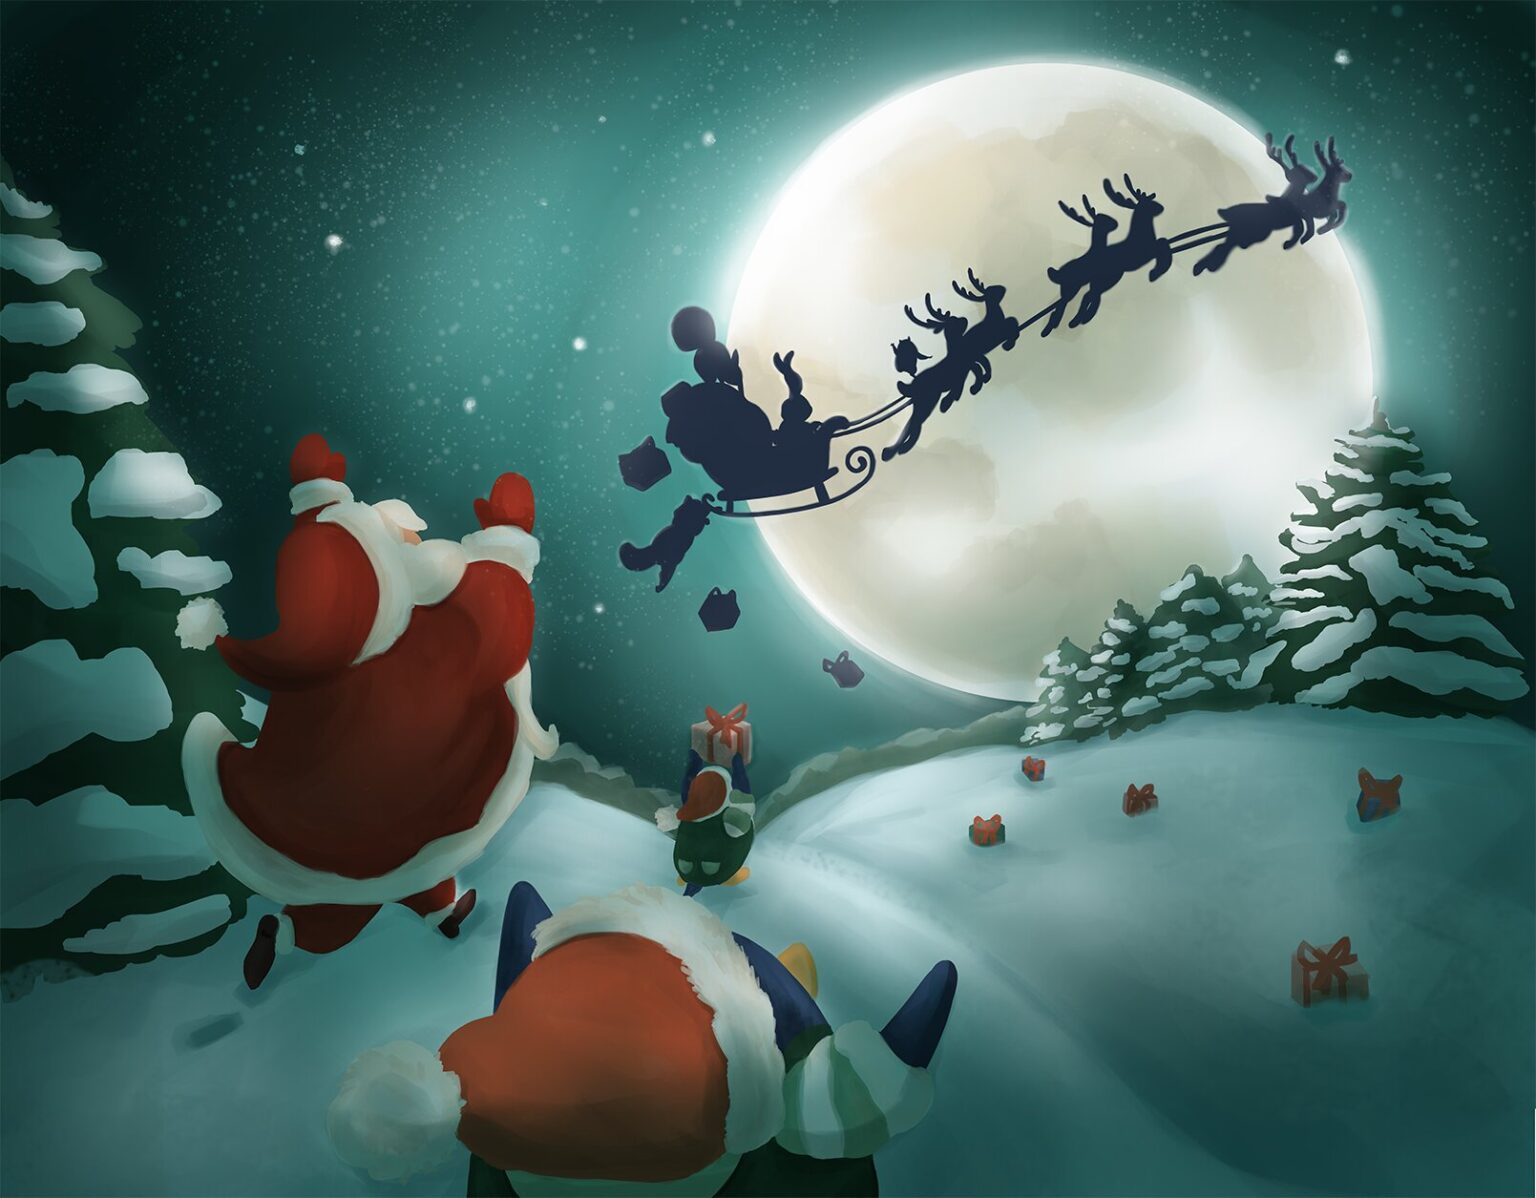 santa and reindeers illustration